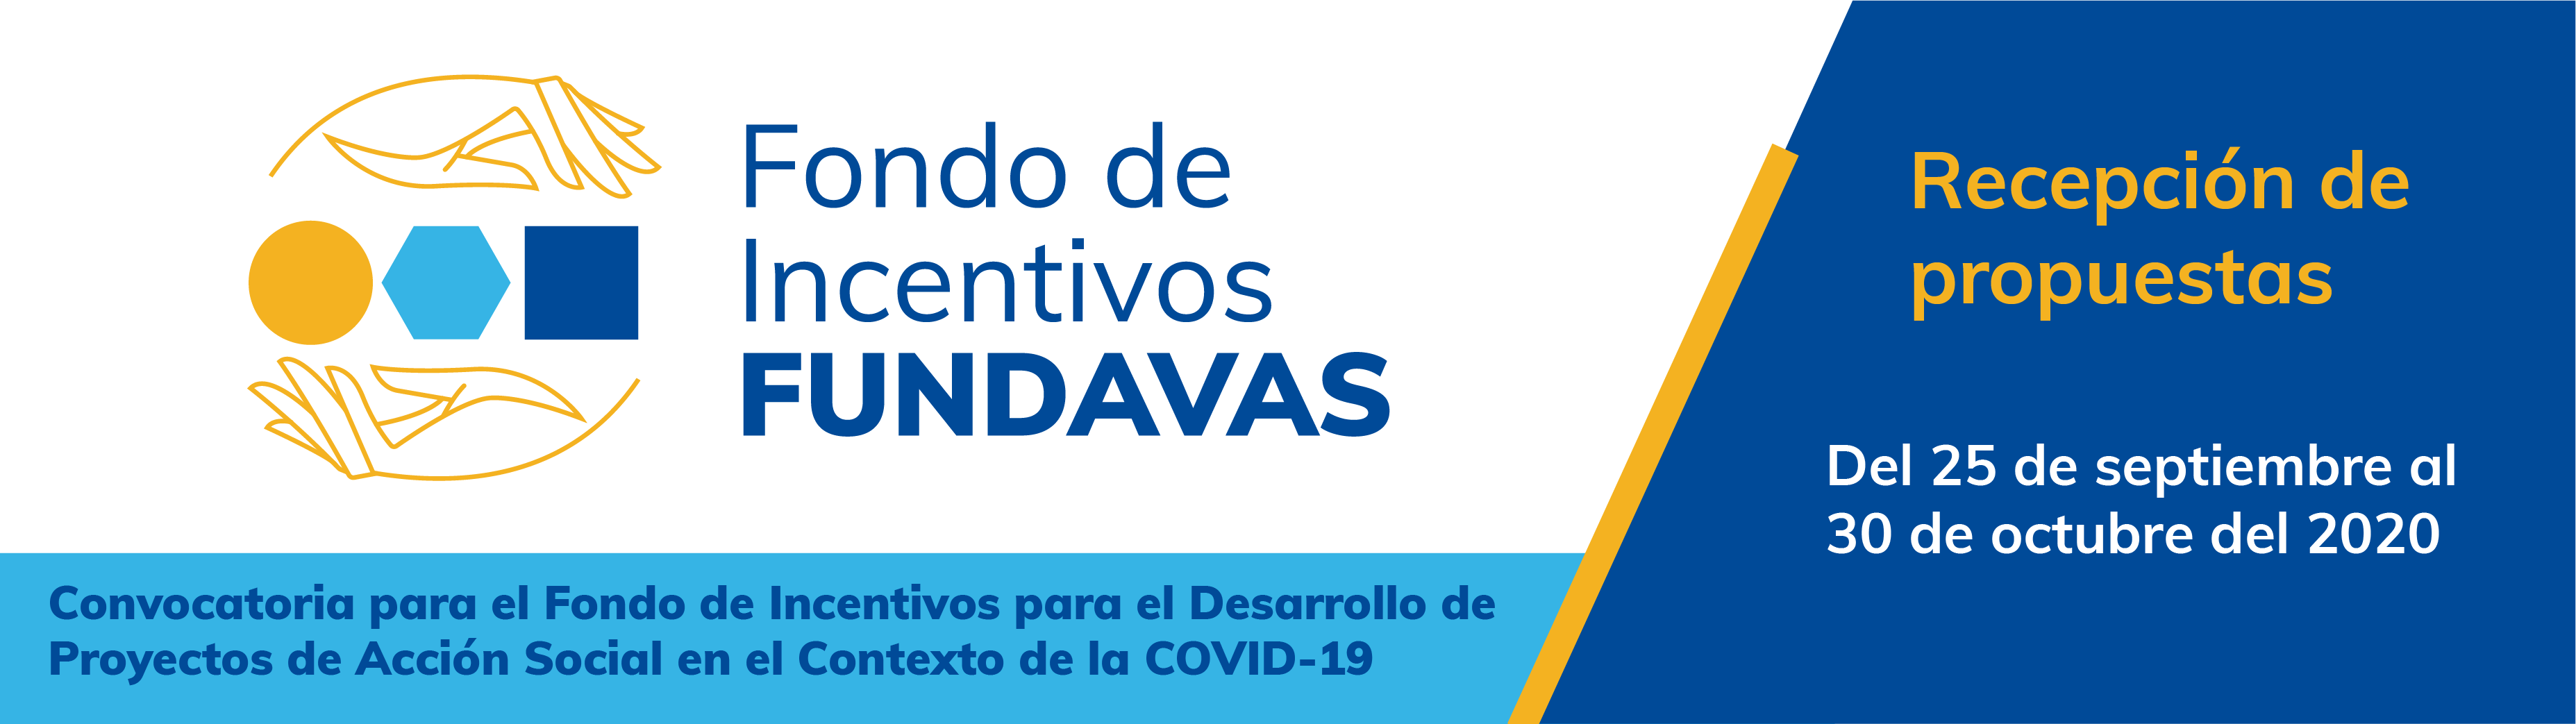 img-noticia-La convocatoria se habilitará del 25 de septiembre al 30 de octubre y su fin primordial es el abordaje de los distintos impactos provocados por la emergencia sanitaria COVID-19.